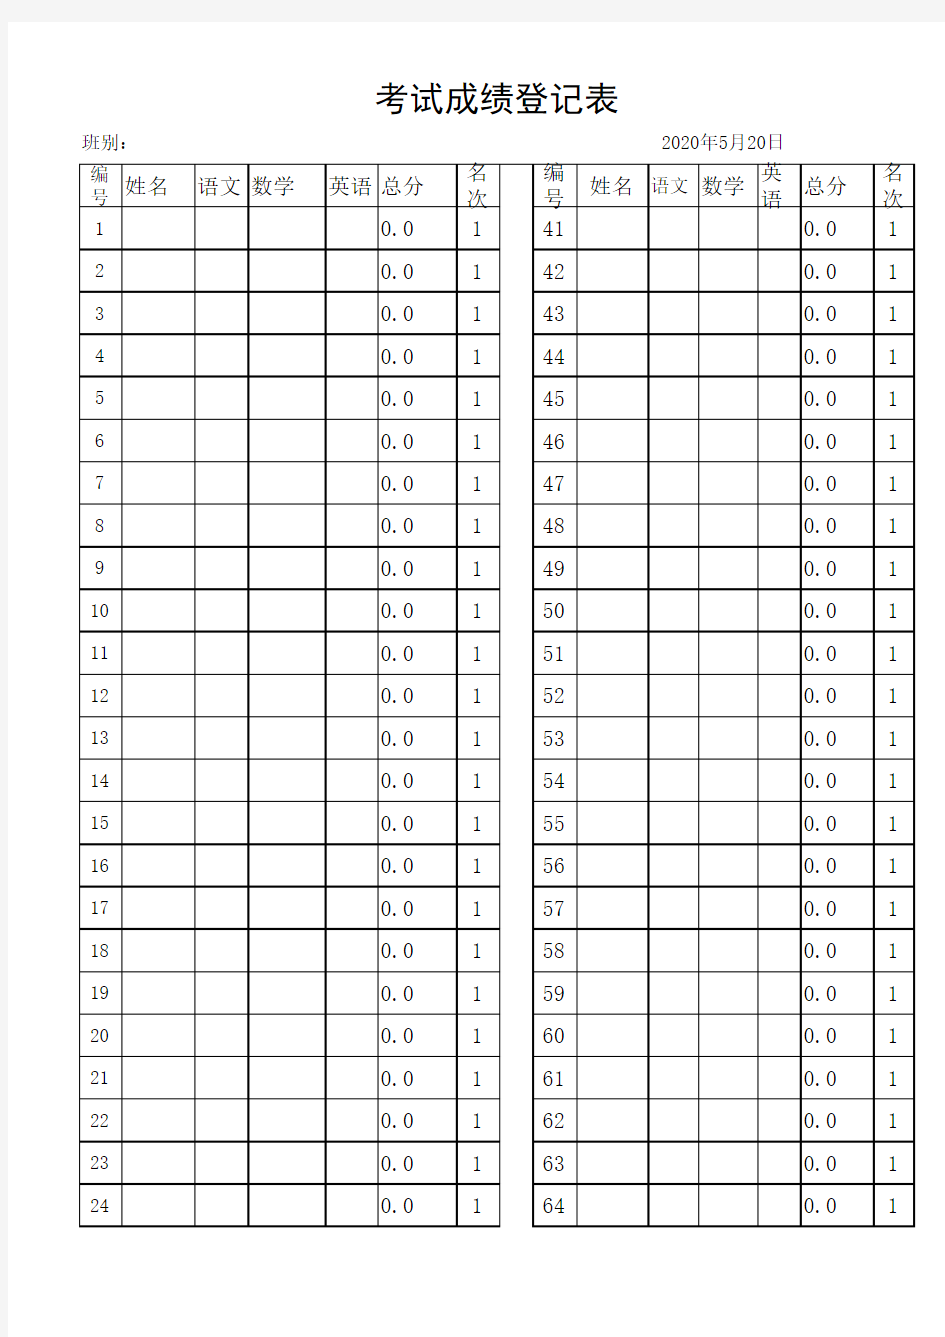 考试成绩登记统计分析表